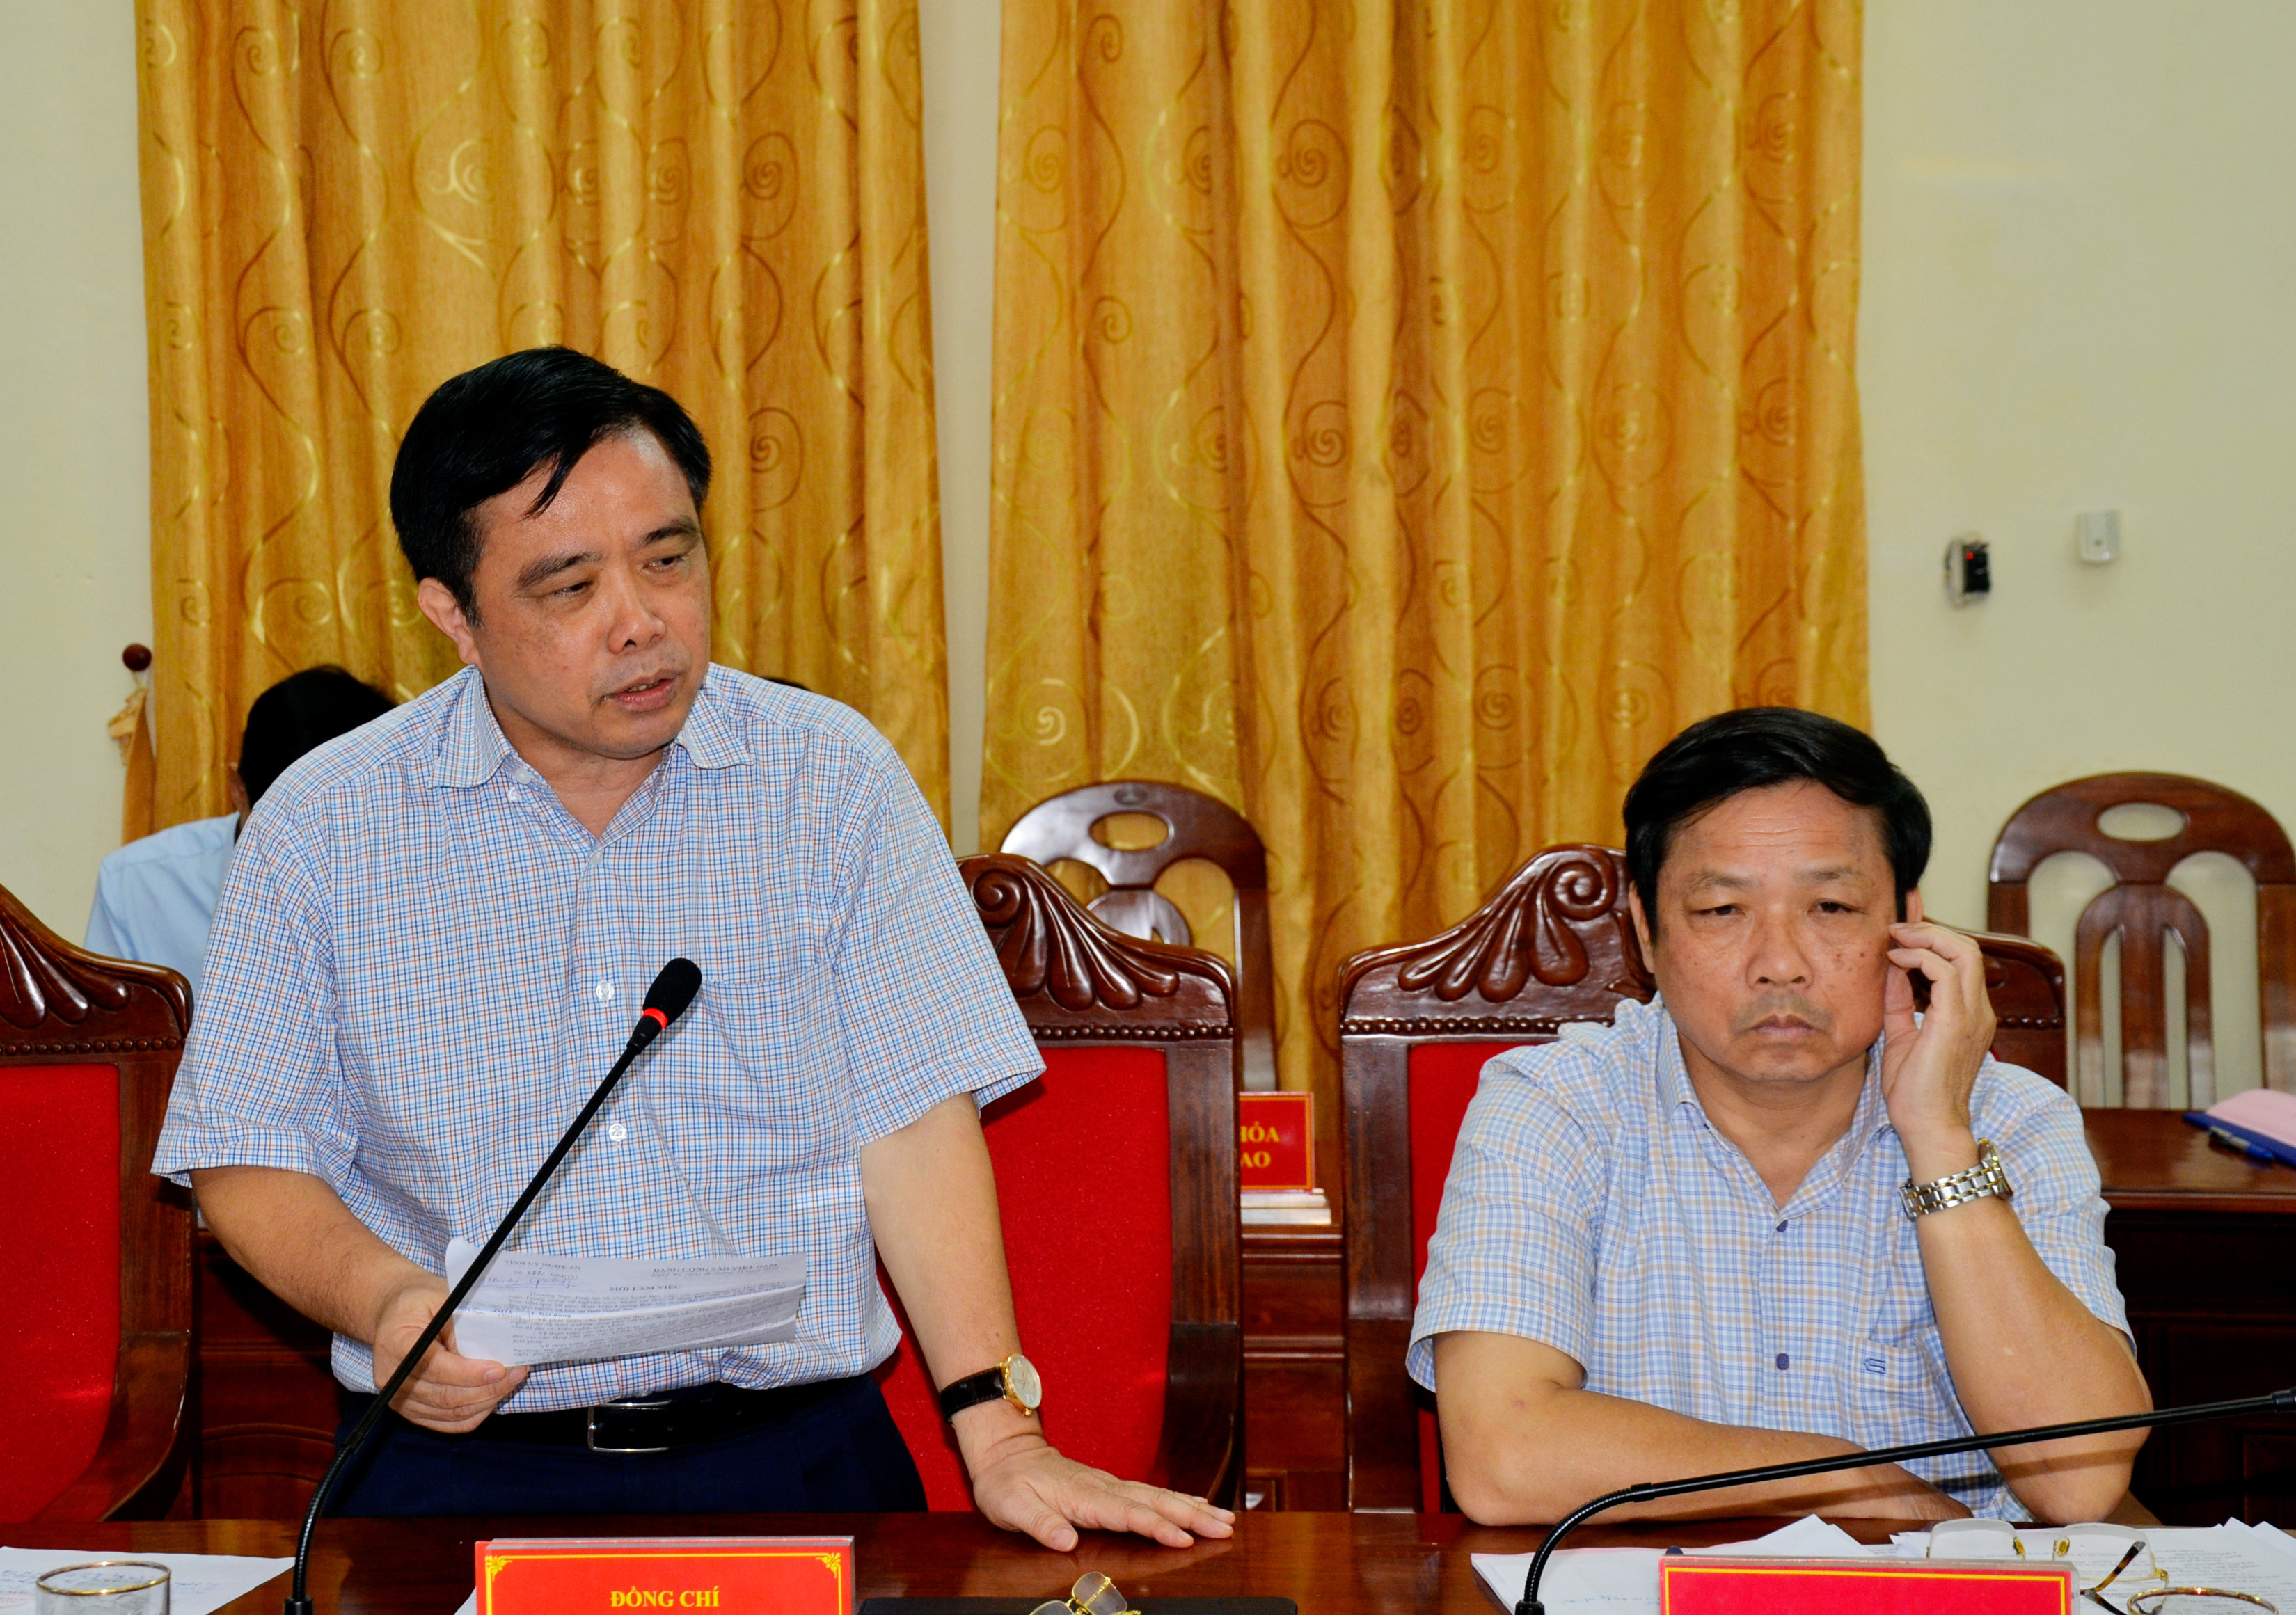 Phó Chủ tịch UBND tỉnh Huỳnh Thanh Điền làm rõ những nội dung đoàn công tác quan tâm về định hướng phát triển kinh tế của Nghệ An. Ảnh Thanh Lê